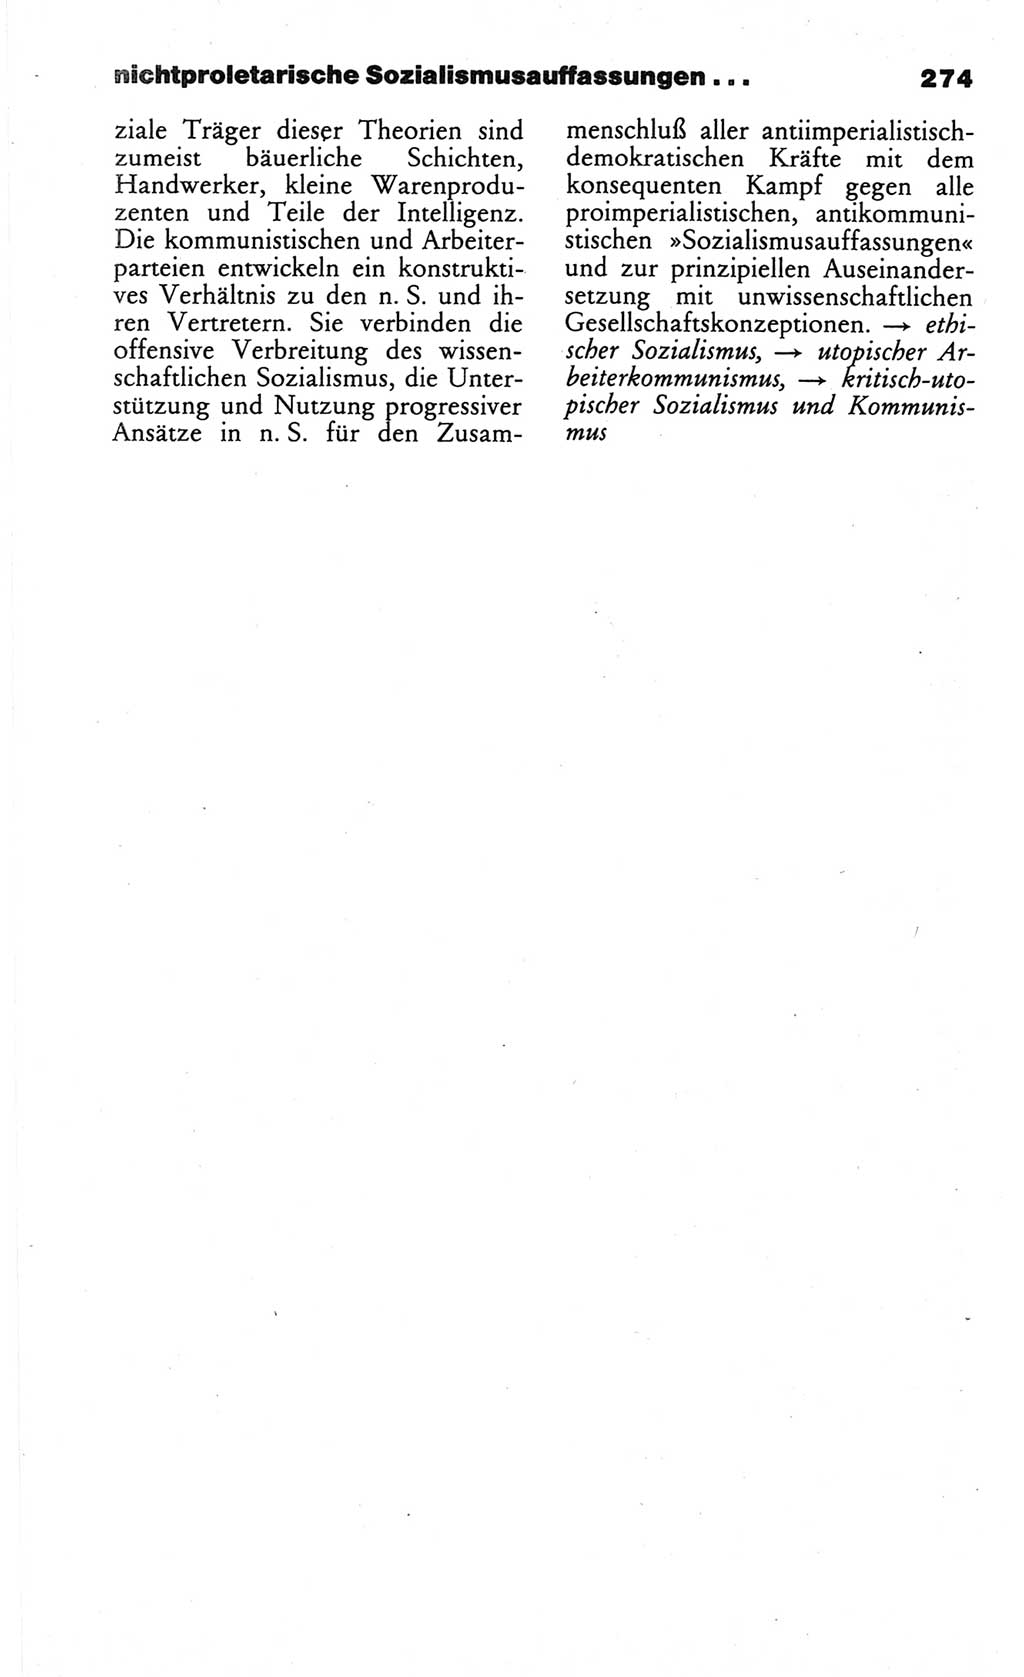 Wörterbuch des wissenschaftlichen Kommunismus [Deutsche Demokratische Republik (DDR)] 1984, Seite 274 (Wb. wiss. Komm. DDR 1984, S. 274)